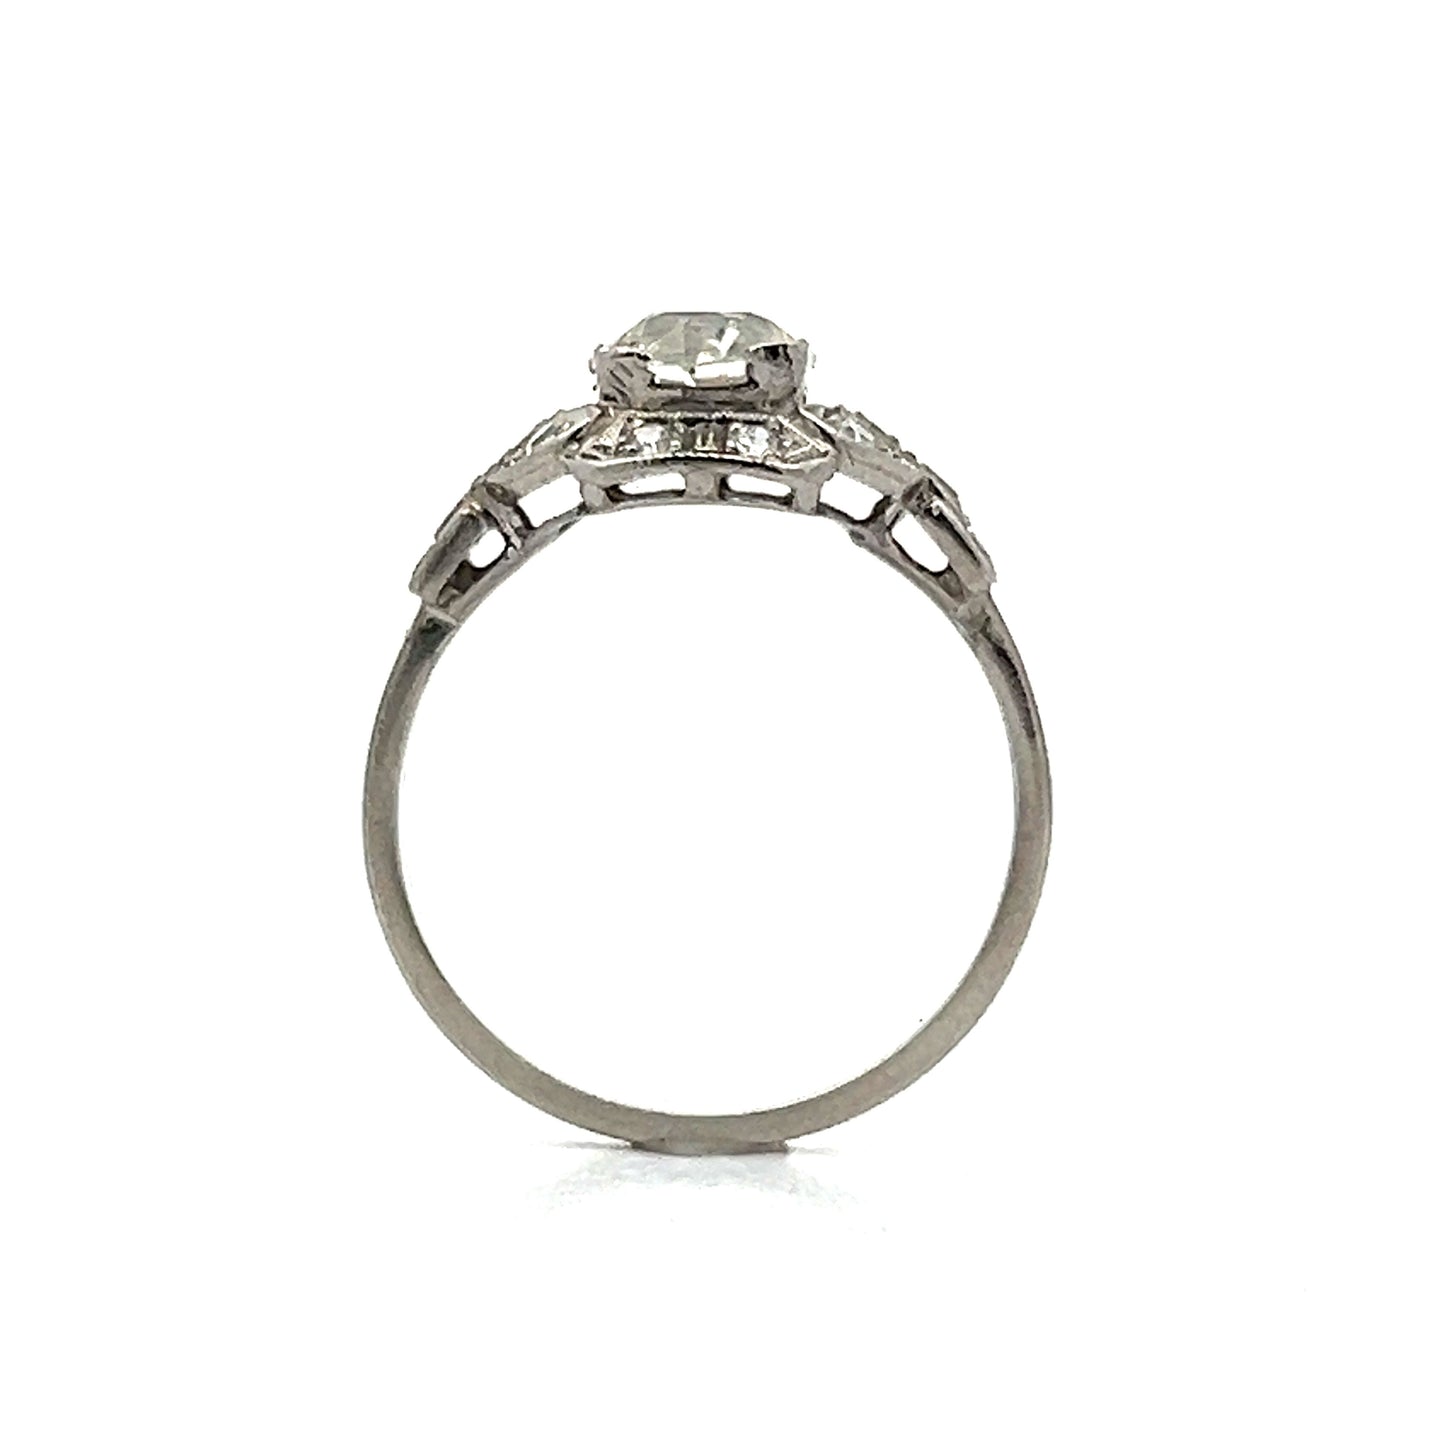 1.04 Art Deco Diamond Halo Engagement Ring in Platinum